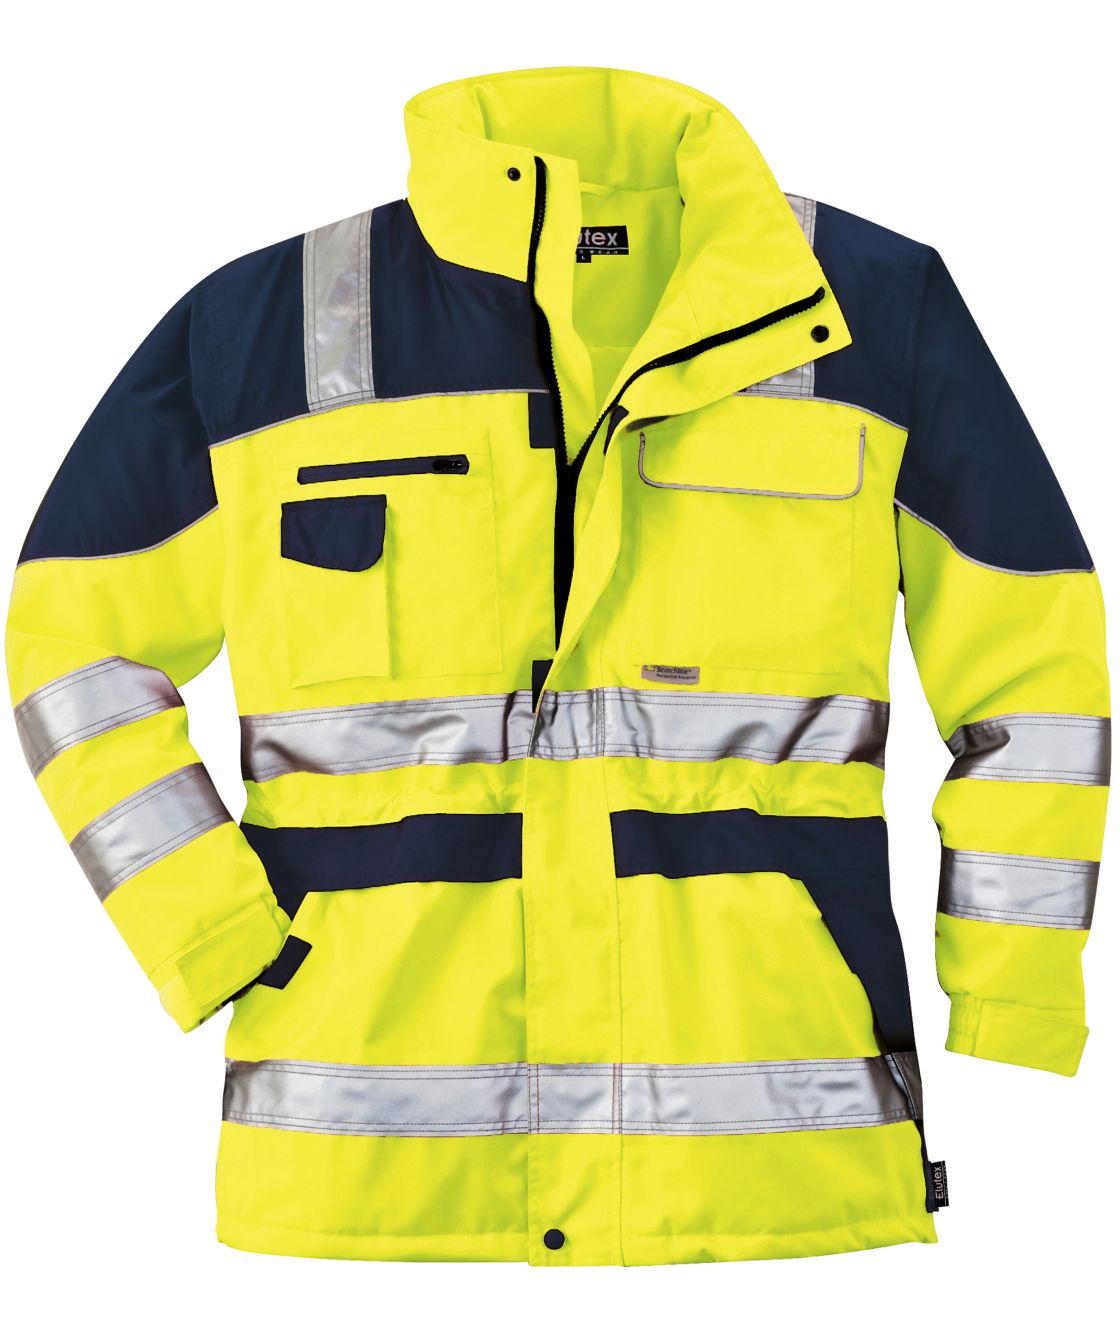 Warnschutz-Parka Safety Plus, gelb/navy gelb/navy